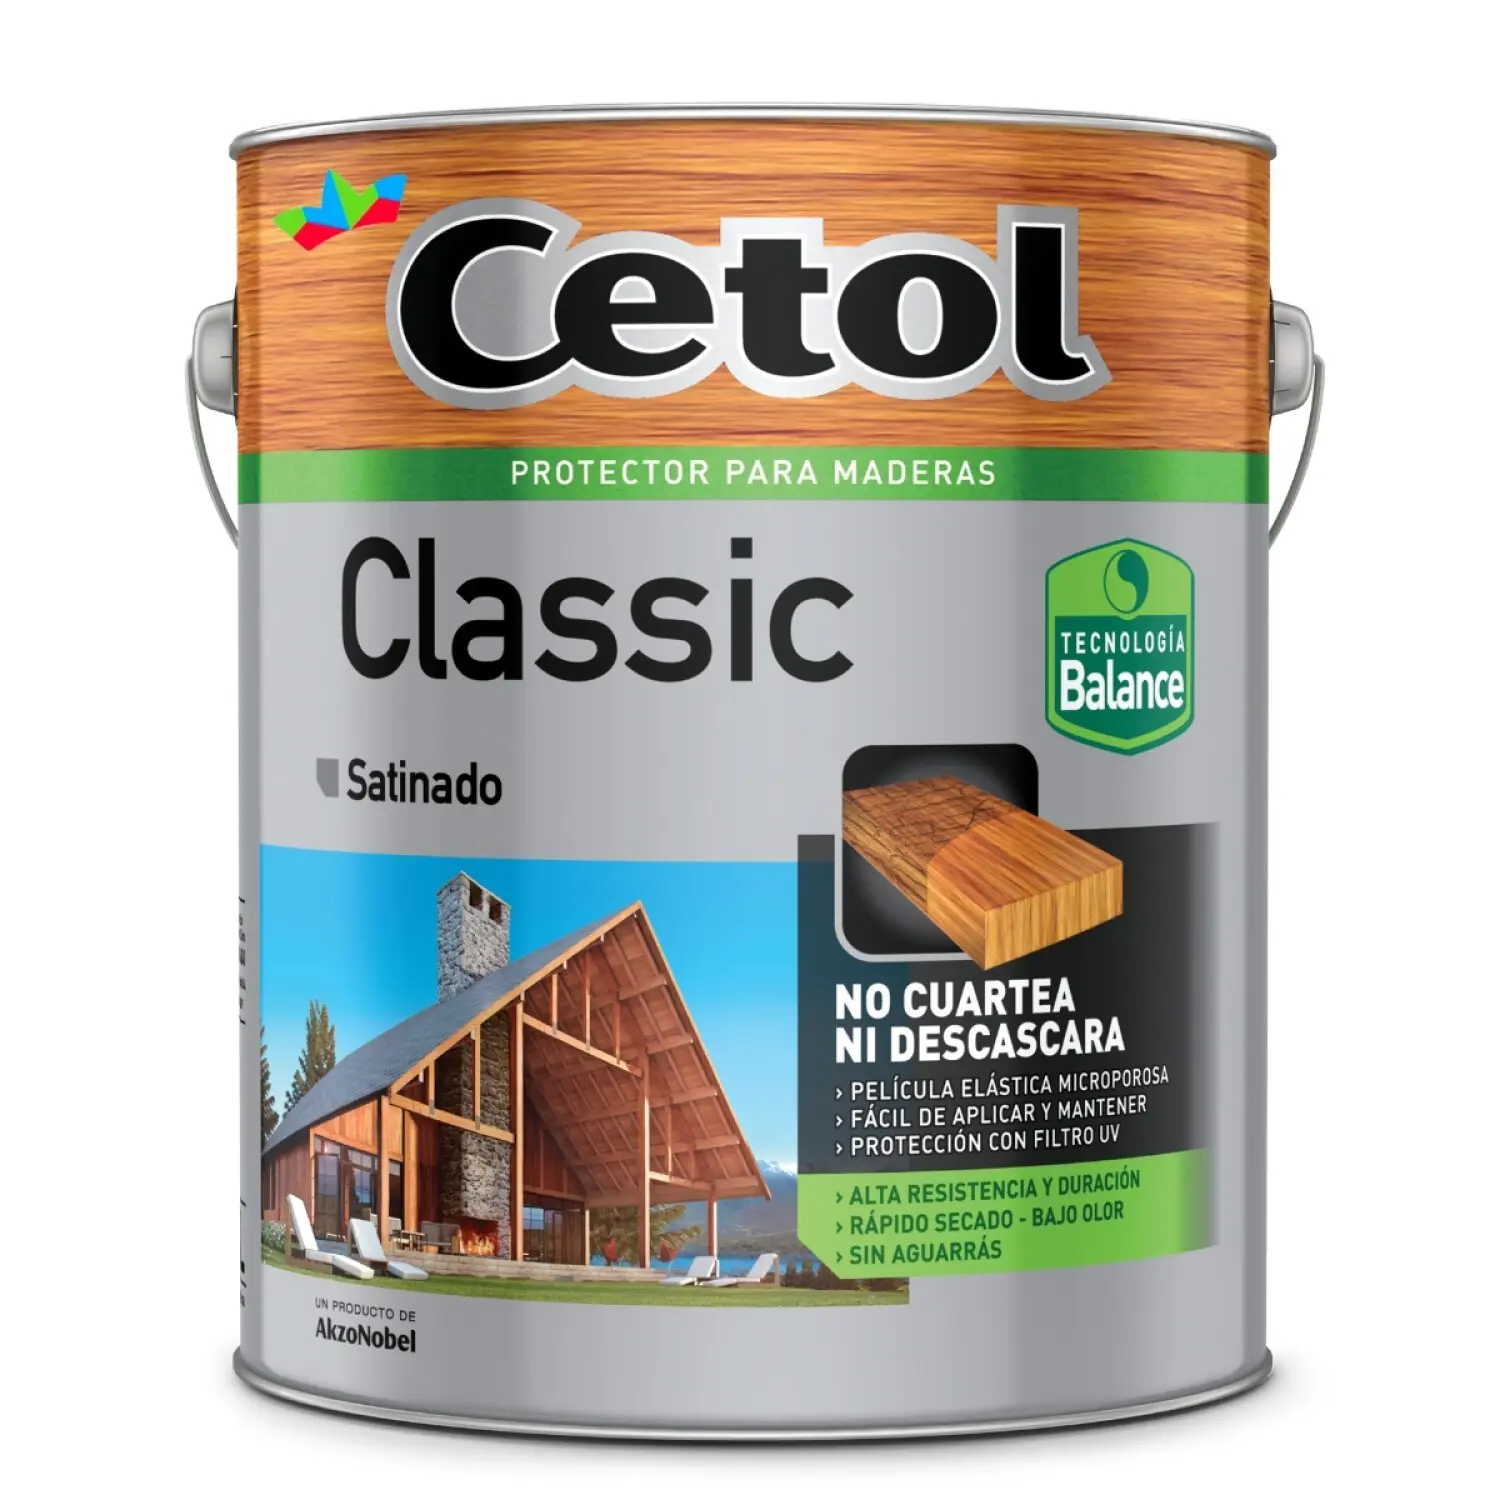 Cetol classic satinado cristal: protección y belleza para la madera